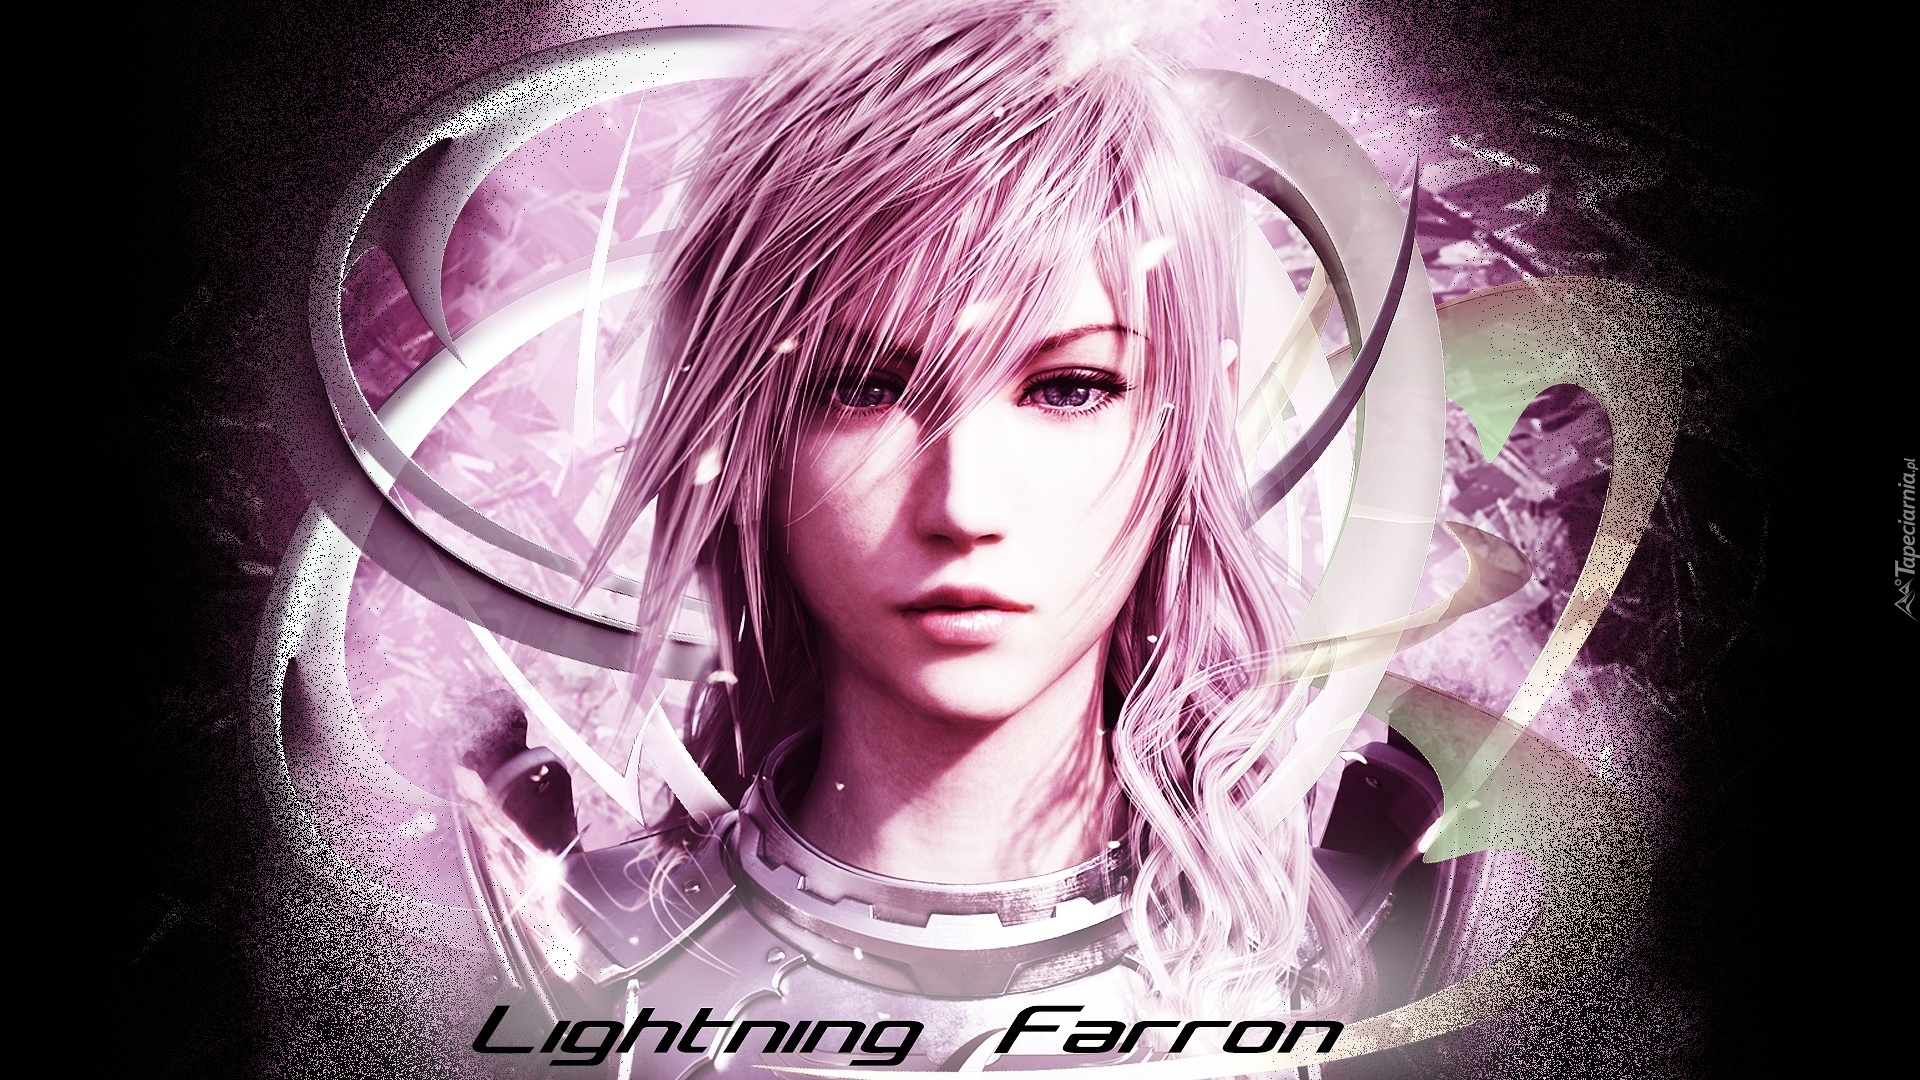 Final Fantasy XII, Lightning Farron